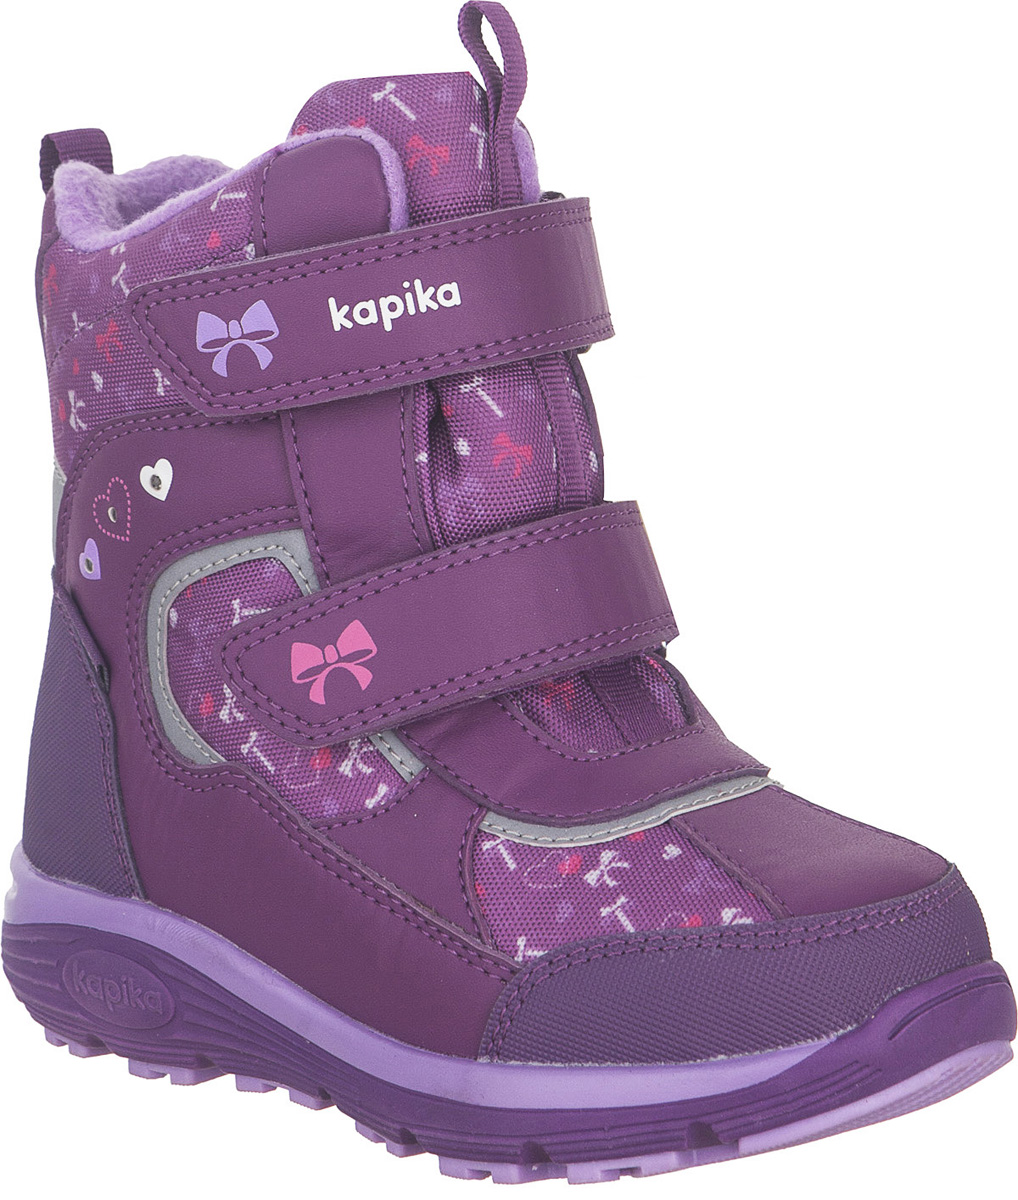 Ботинки для девочки Kapika KapiTEX, цвет: фиолетовый. 42258-2. Размер 31